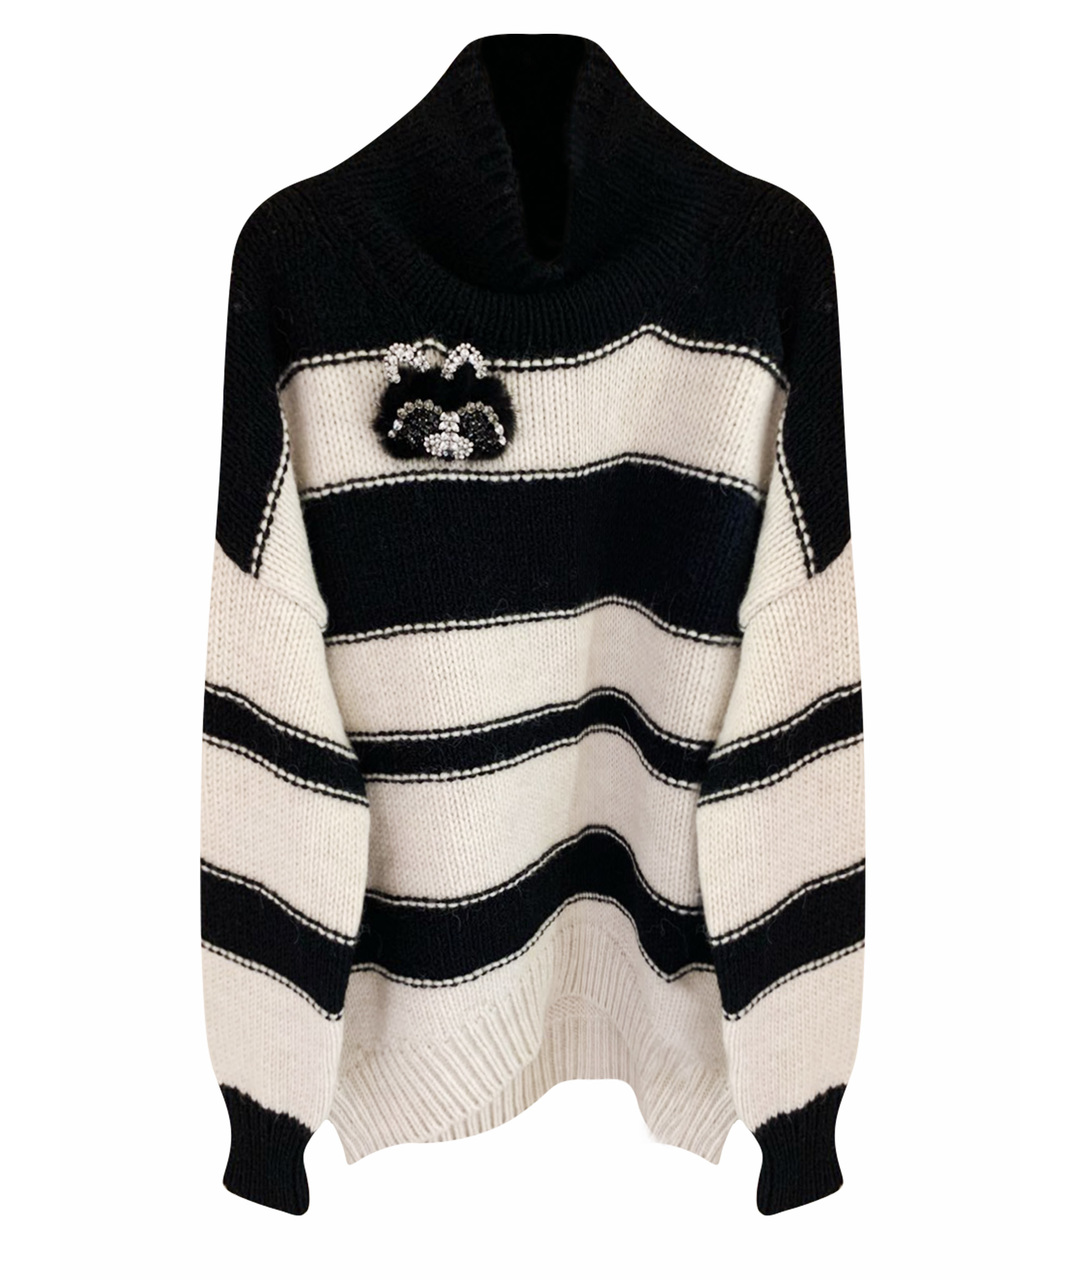 ERMANNO SCERVINO Черный шерстяной джемпер / свитер, фото 1